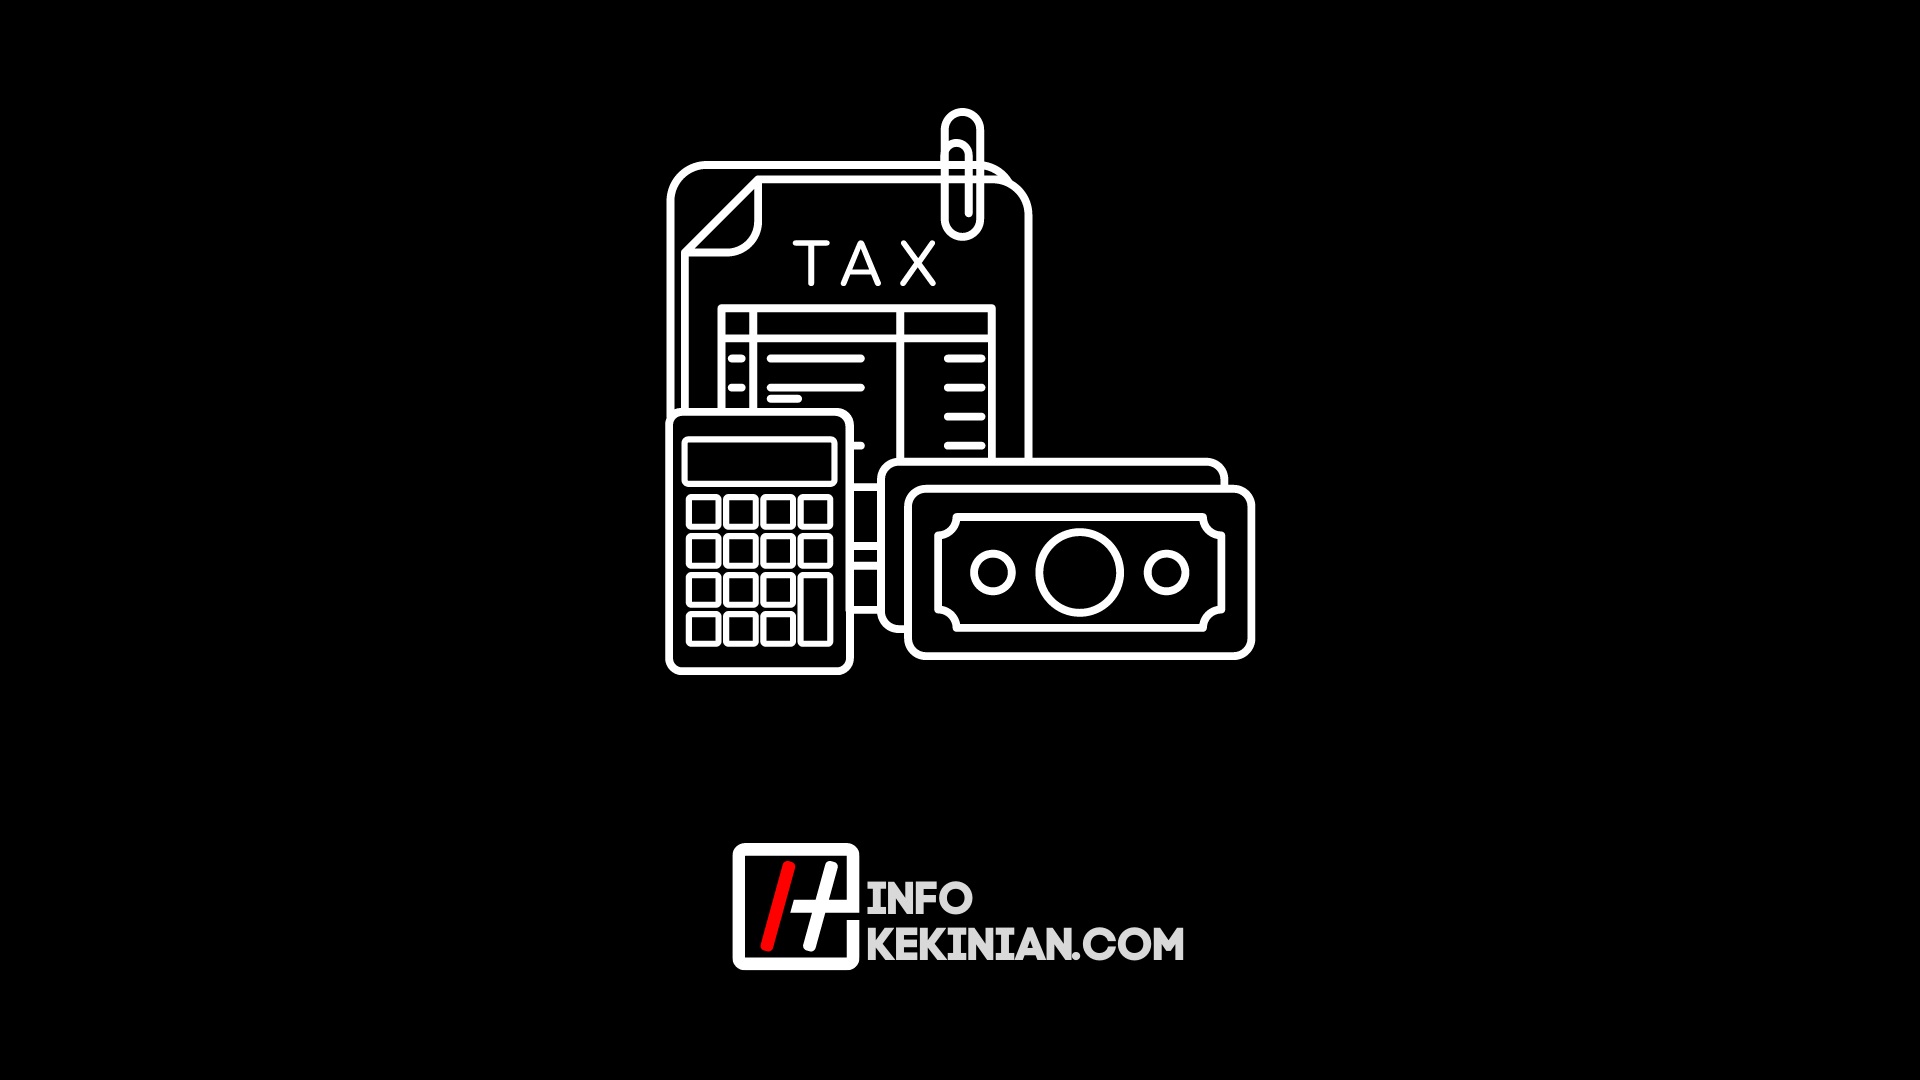 So überprüfen Sie die Fahrzeugsteuern online in der Provinz Banten